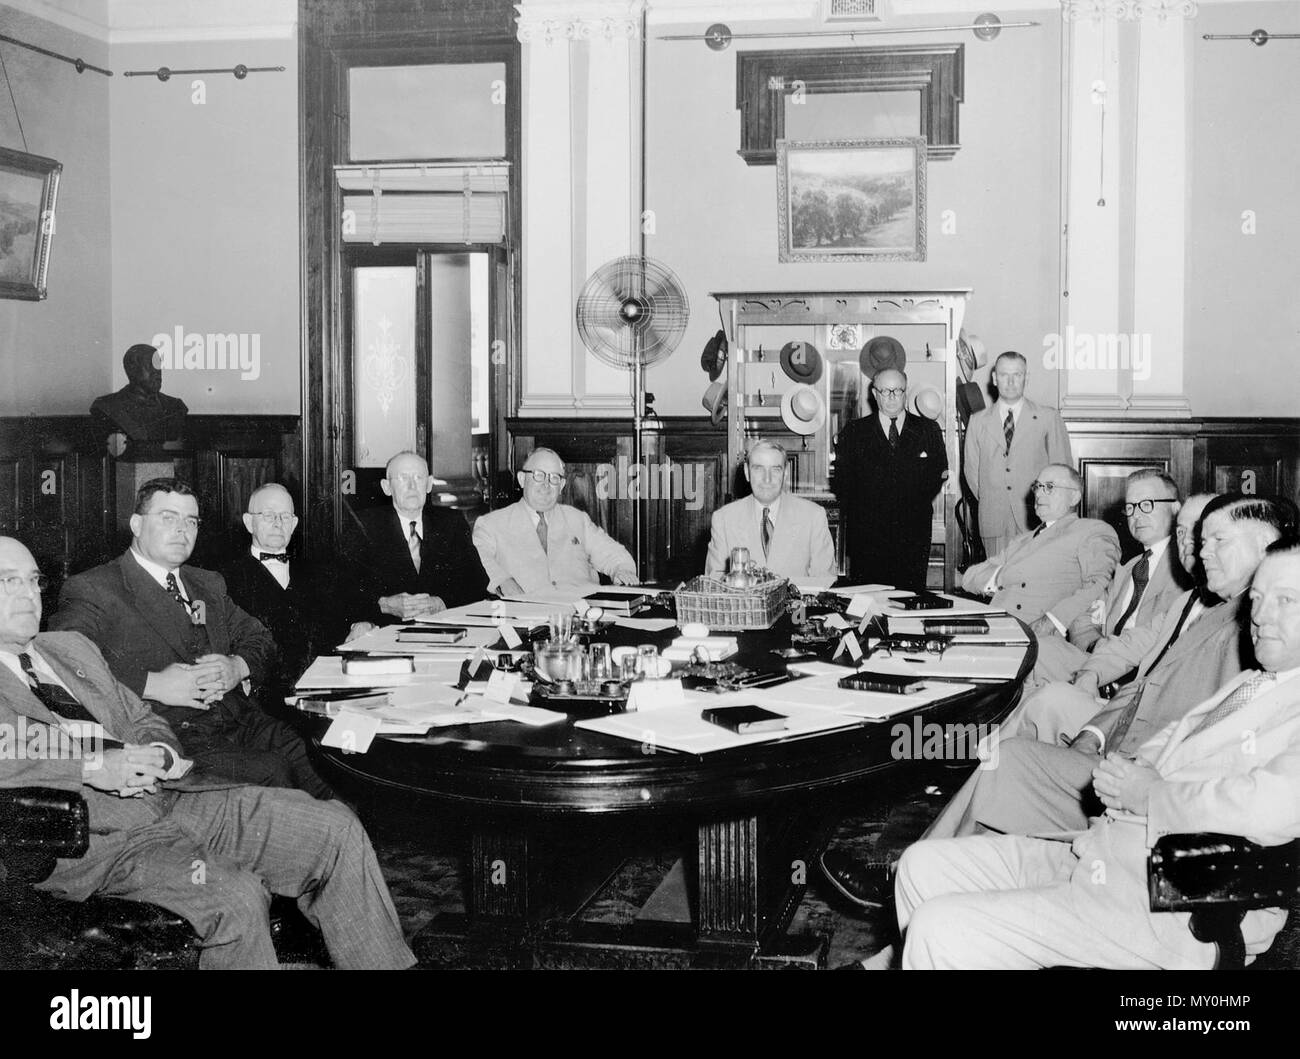 La primera ceremonia de juramentación en el Ministerio Gair, Brisbane, el 17 de enero de 1952. Sentados de izquierda a derecha. Hon G.H. Devries, Secretario de Instrucción Pública Hon J.E. Duggan, Ministro de Transportes Hon J. Larcombe, Procurador General Hon T.A. Foley, Secretario de Tierras y la irrigación Hon V. C. Gair, Premier Lt Gen Sir John Lavarack, Gobernador de Queensland Hon H.H. Collins, Secretario de Agricultura y existencias Hon A. Jones, Secretario del Trabajo y la industria Hon W. potencia, secretario de minas y la inmigración Hon E.J. Walsh, Tesorero Hon P.J.R. Hilton, secretario de Obras Públicas, Vivienda y Gobierno Local de pie Foto de stock